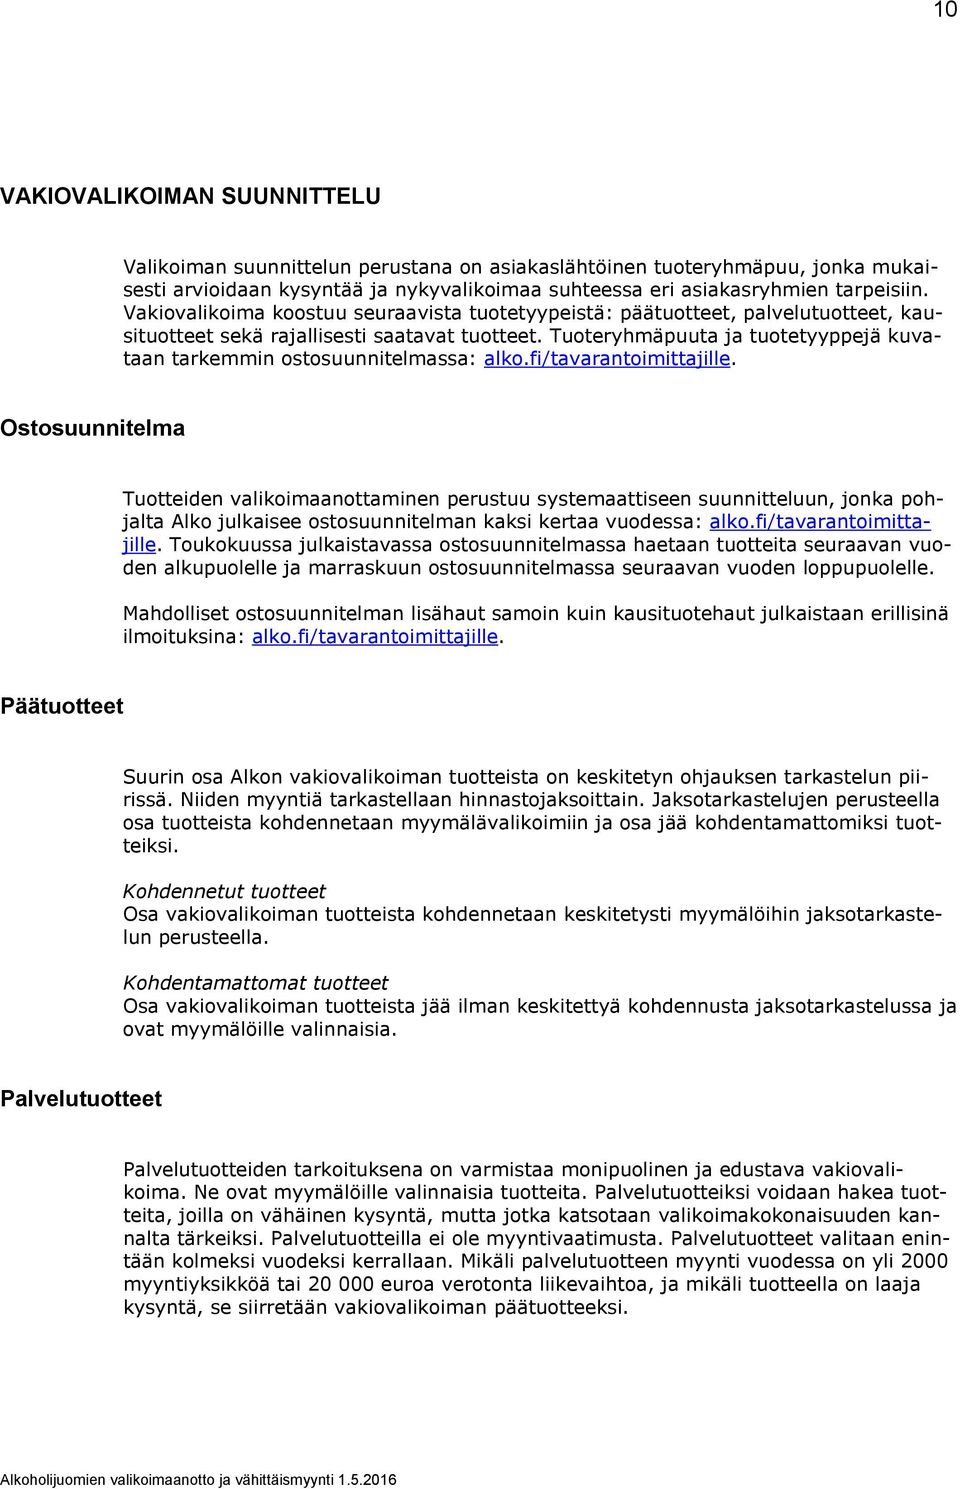 Tuoteryhmäpuuta ja tuotetyyppejä kuvataan tarkemmin ostosuunnitelmassa: alko.fi/tavarantoimittajille.